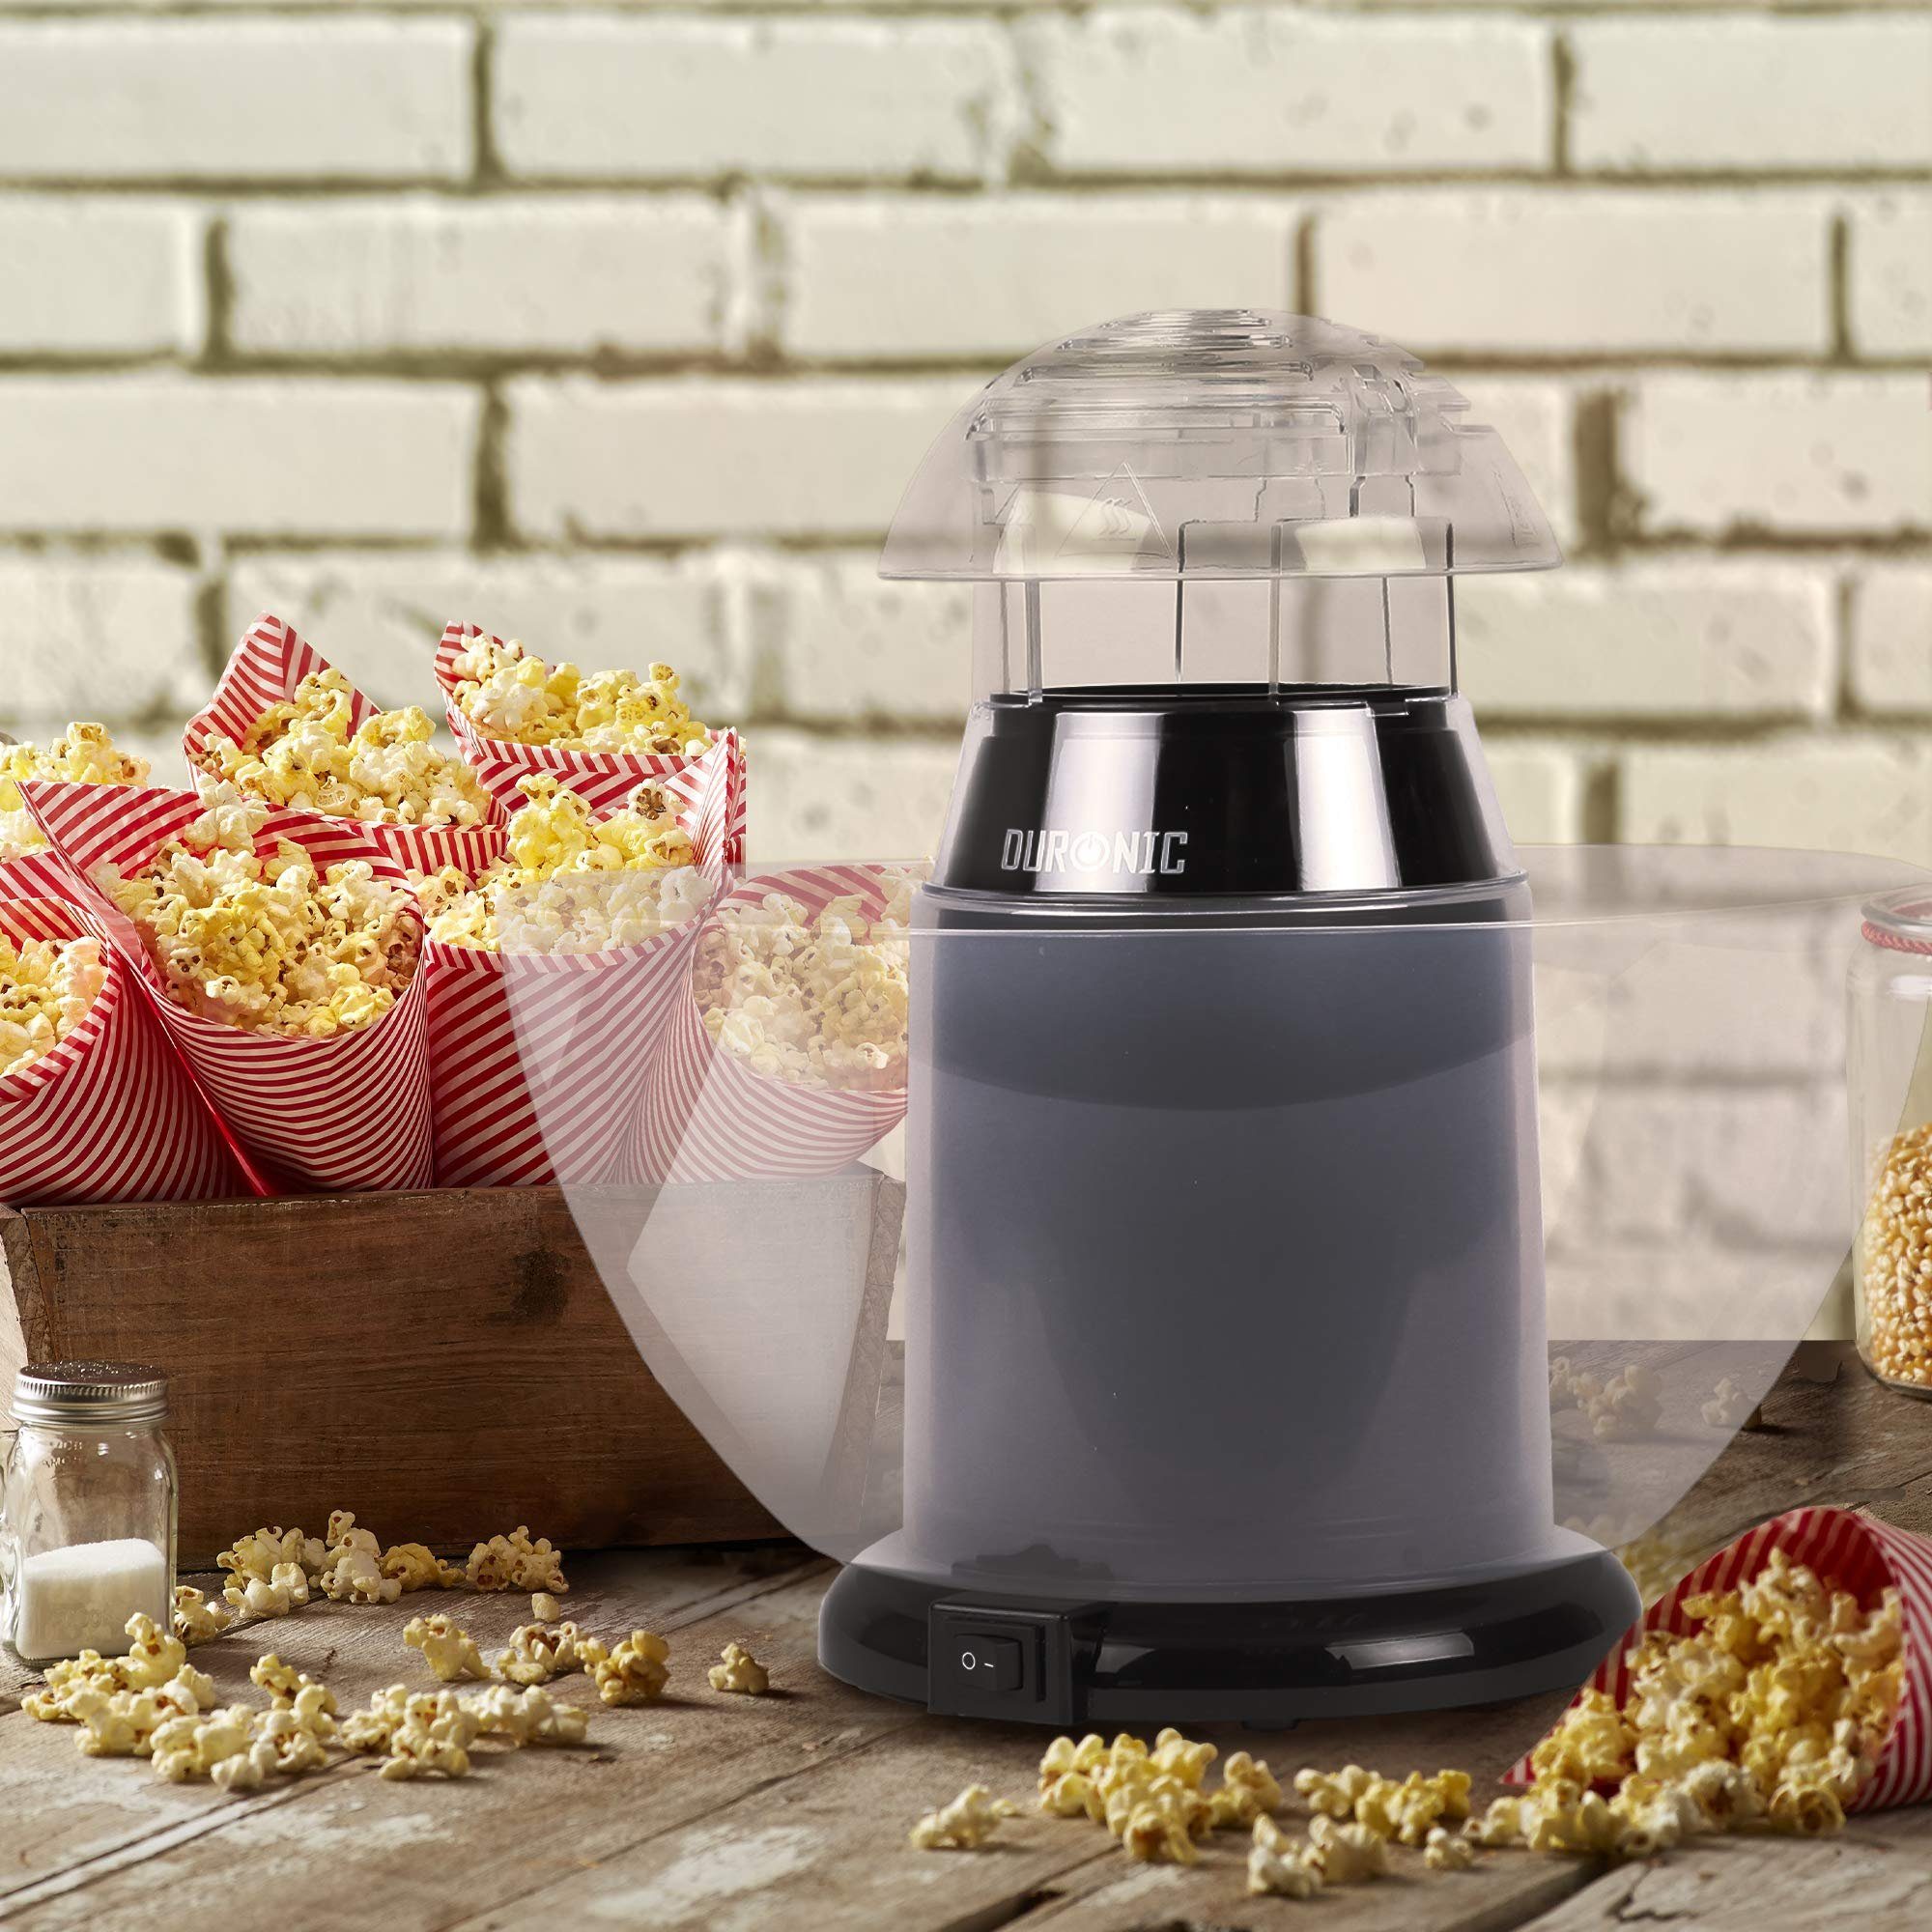 ohne & Fett Duronic Watt Popcornmaschine, POP50 Heißluft Öl, BK Popcornmaschine, 1200